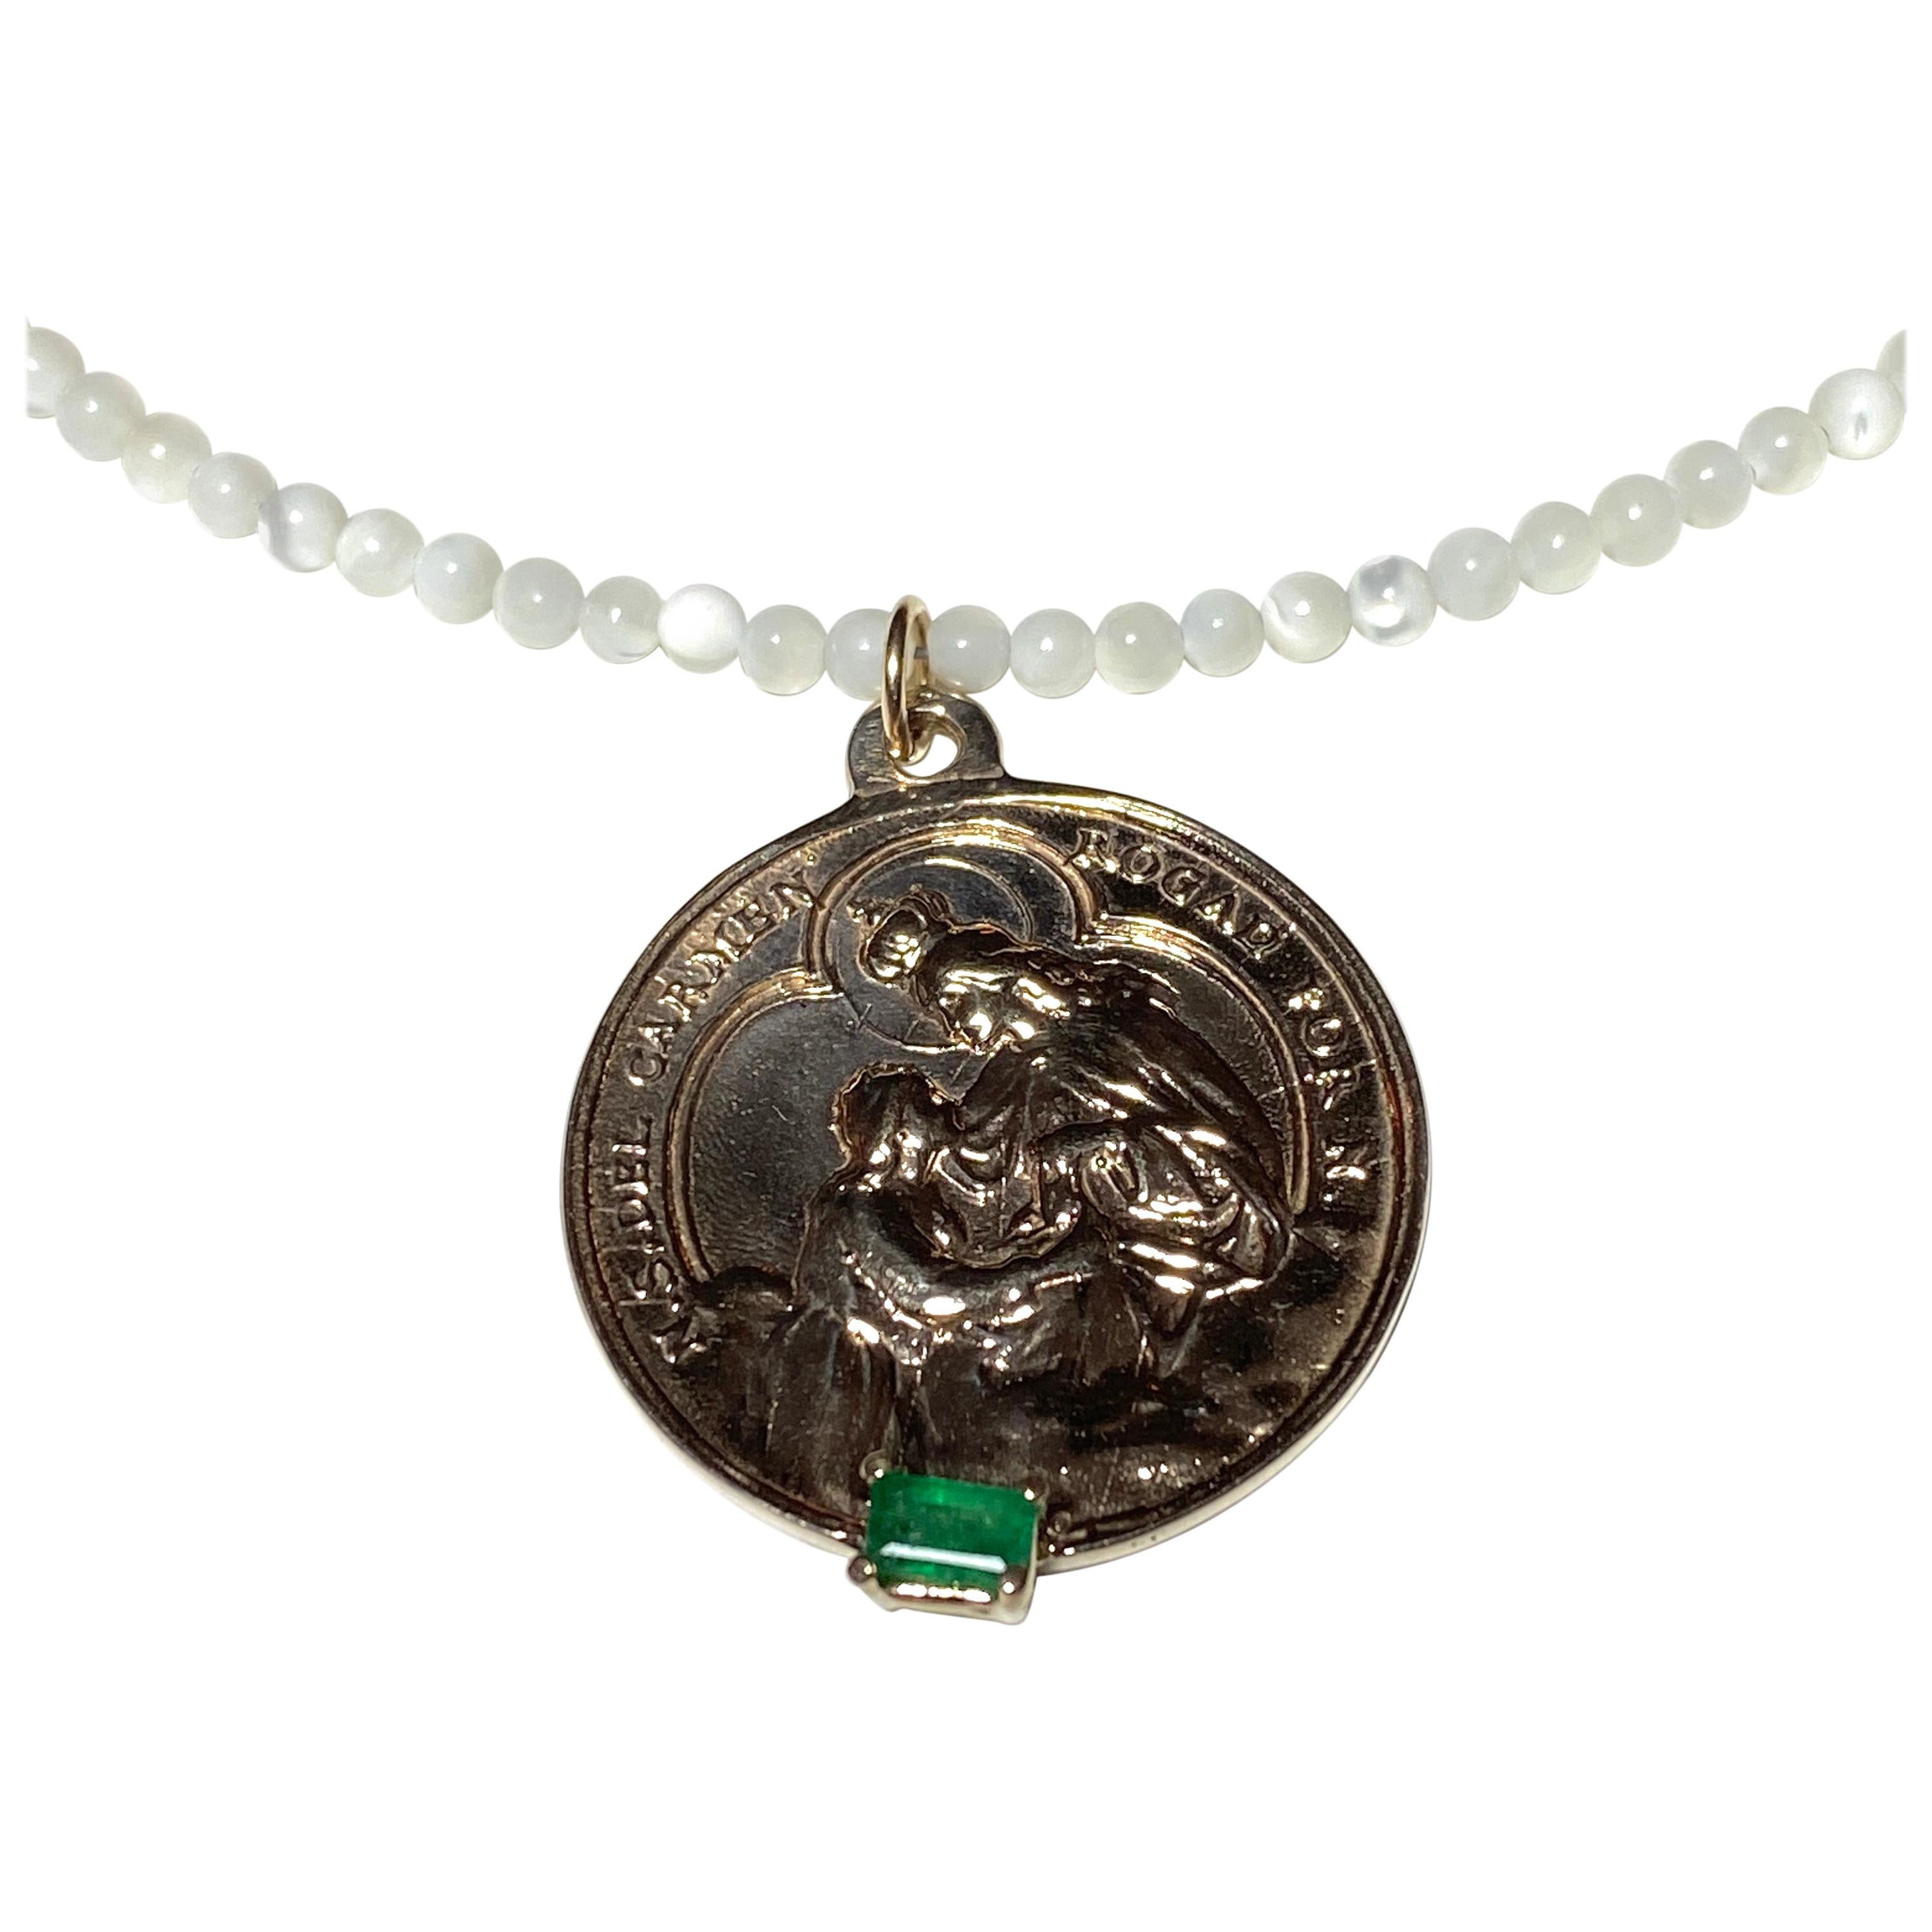 Smaragd Carmen Bronze Weiß Perlenkette J DAUPHIN

Exklusives Stück mit spanischem Carmen-Anhänger und einem Smaragd, der in einer Goldzacke auf einem Bronze-Anhänger gefasst ist. Die Perlenkette ist 16